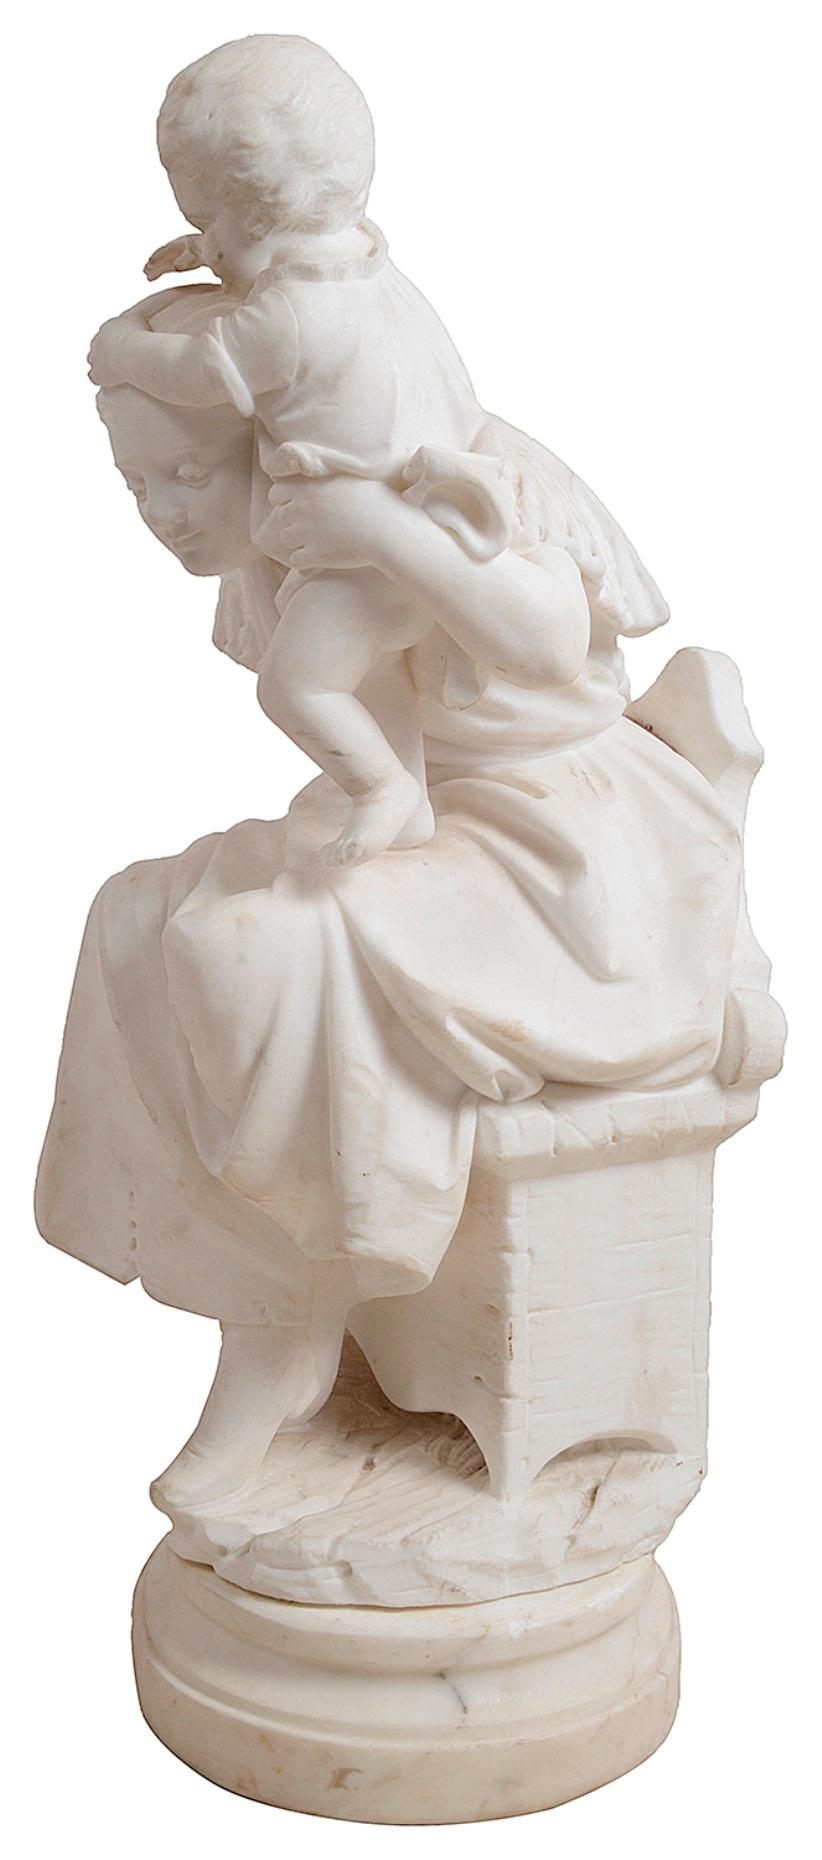 Charmante statue en marbre sculpté du XIXe siècle représentant une mère assise et un enfant jouant sur ses épaules.